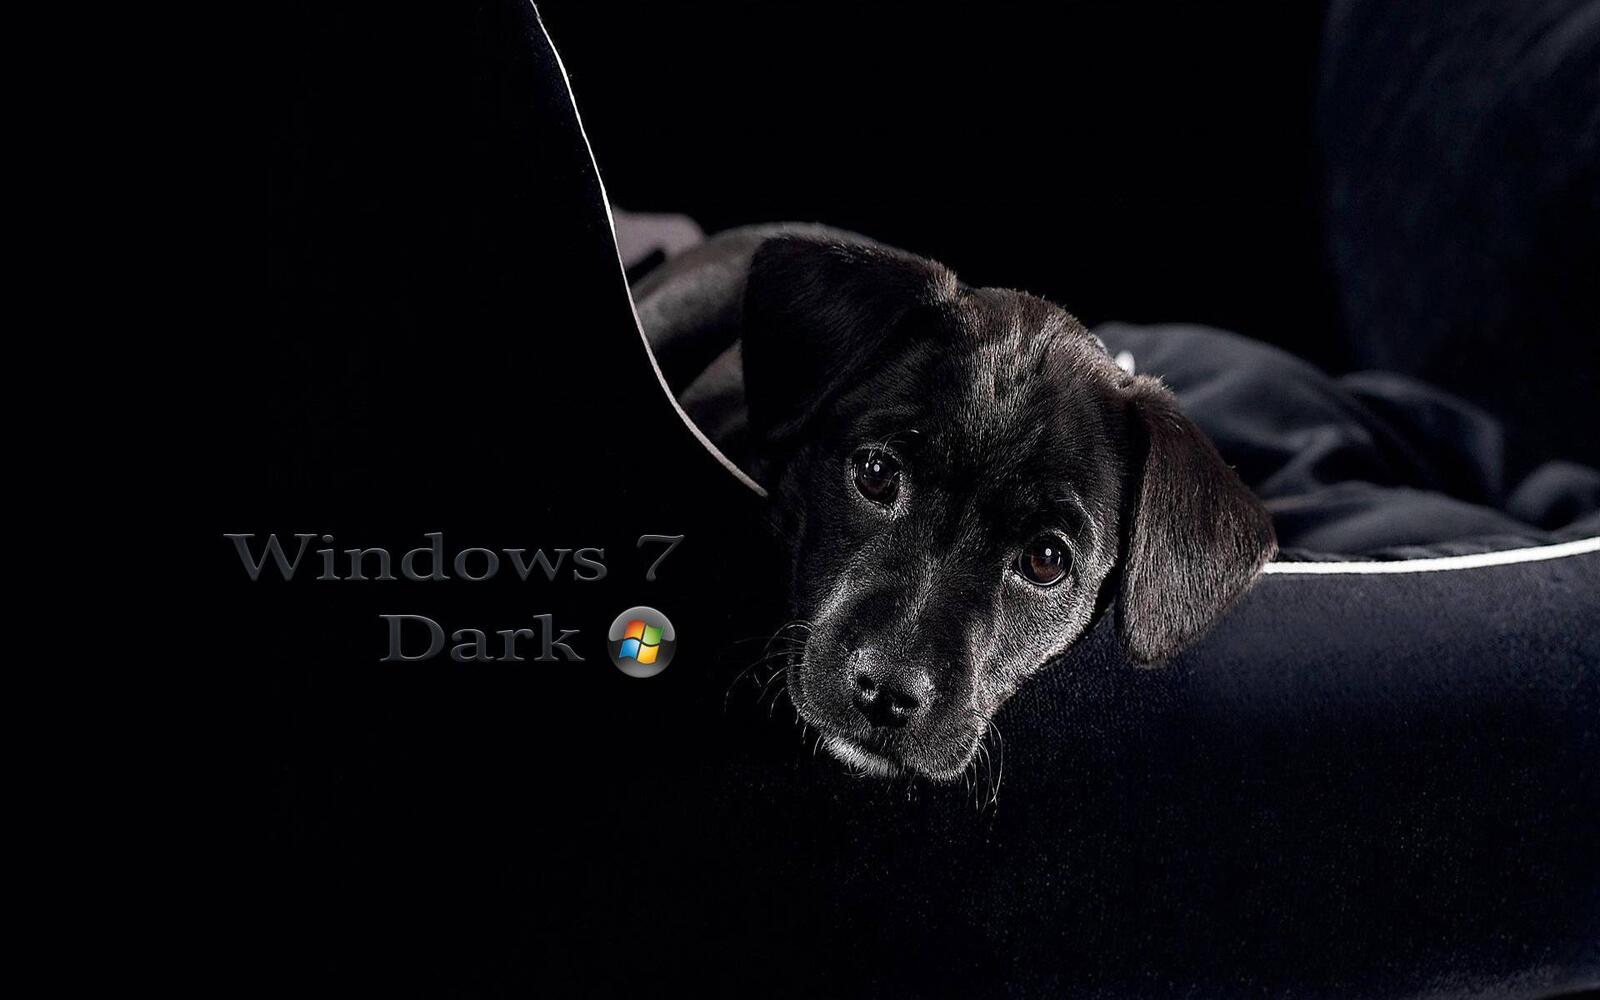 Бесплатное фото Windows 7 Dark dog